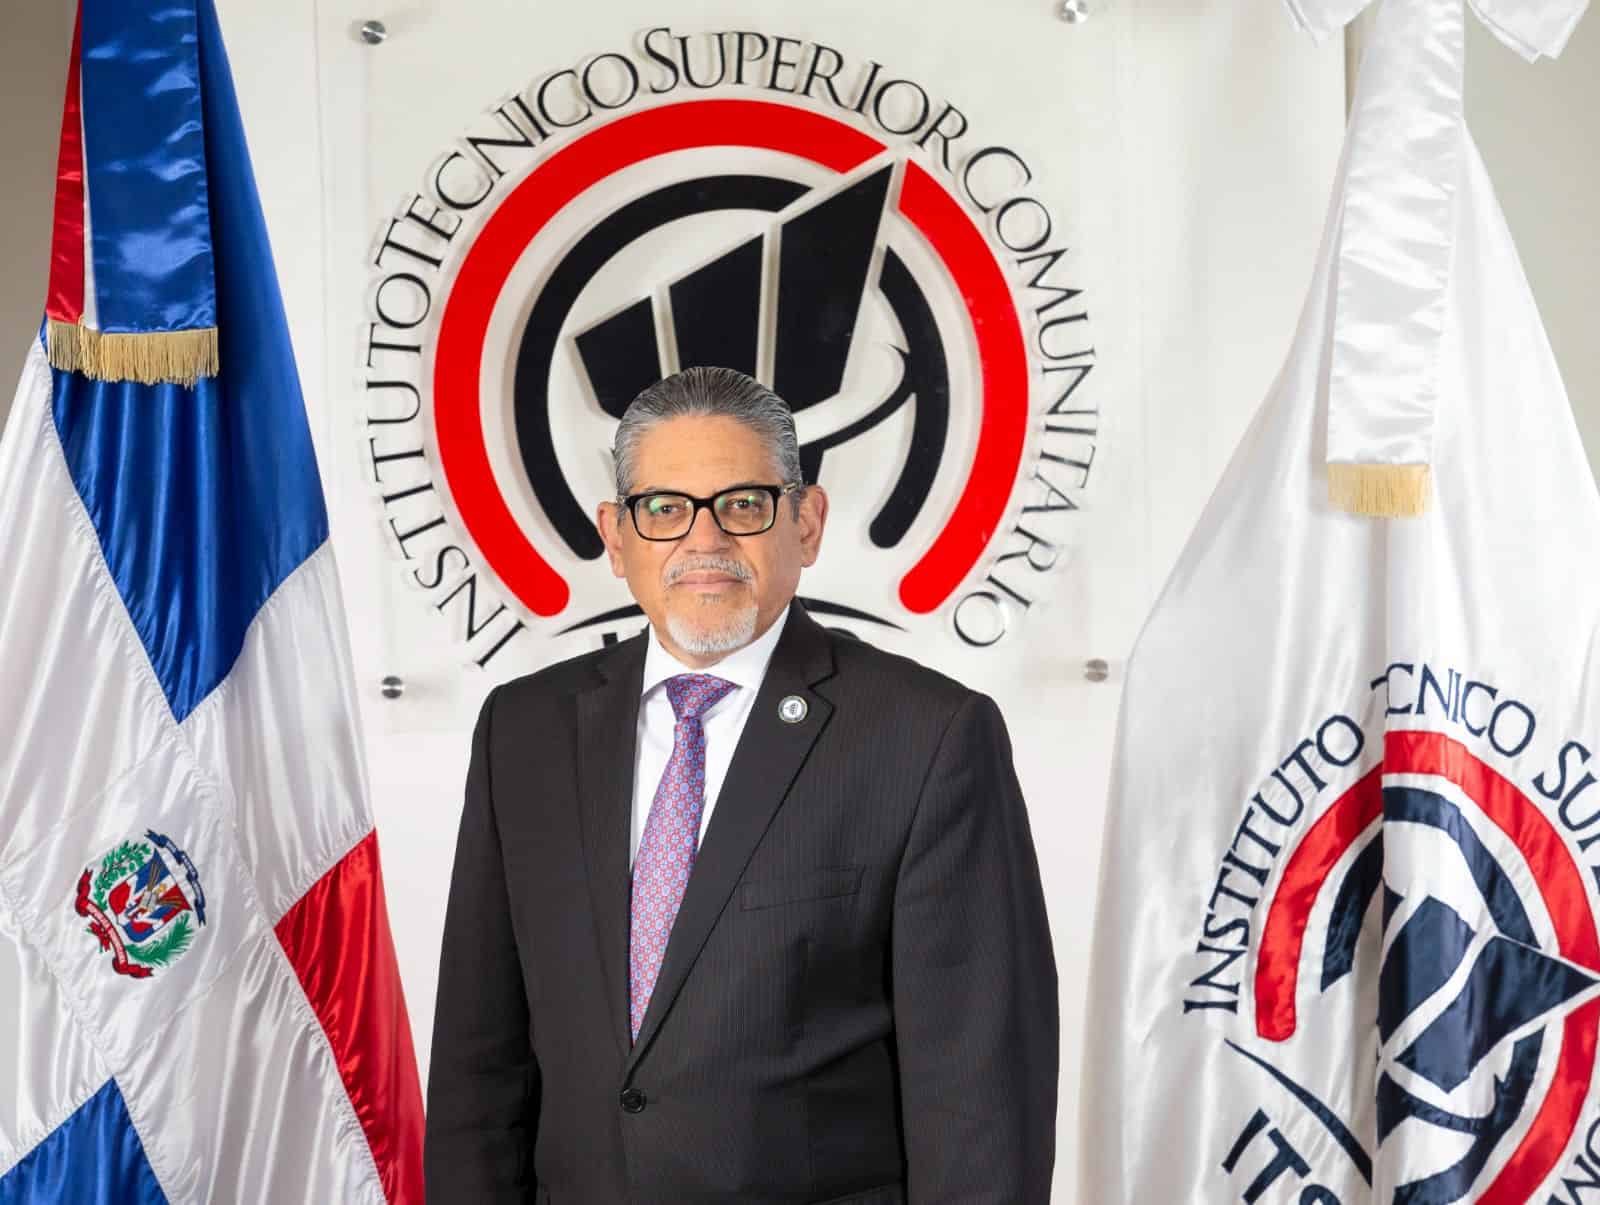 Rescate, expansión y agregar nuevas carreras son prioridades de Pedro Quezada, rector del ITSC – El Profe Show